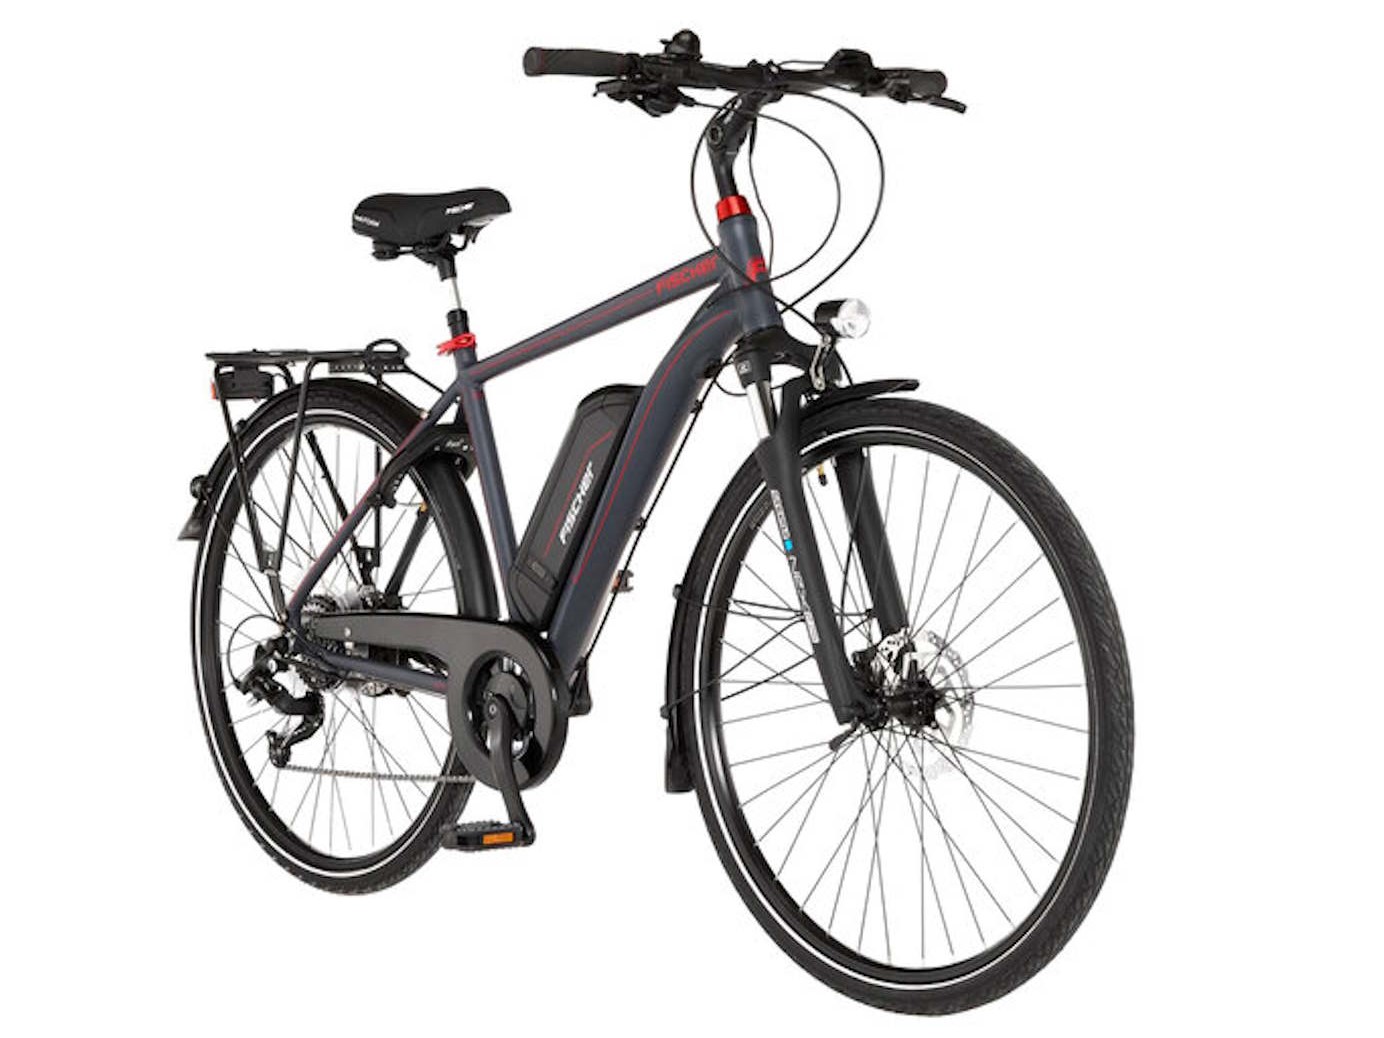 Tienda online de Aldi: la bicicleta eléctrica de turismo Fischer está actualmente disponible a su precio más alto, en versión para hombre y para mujer